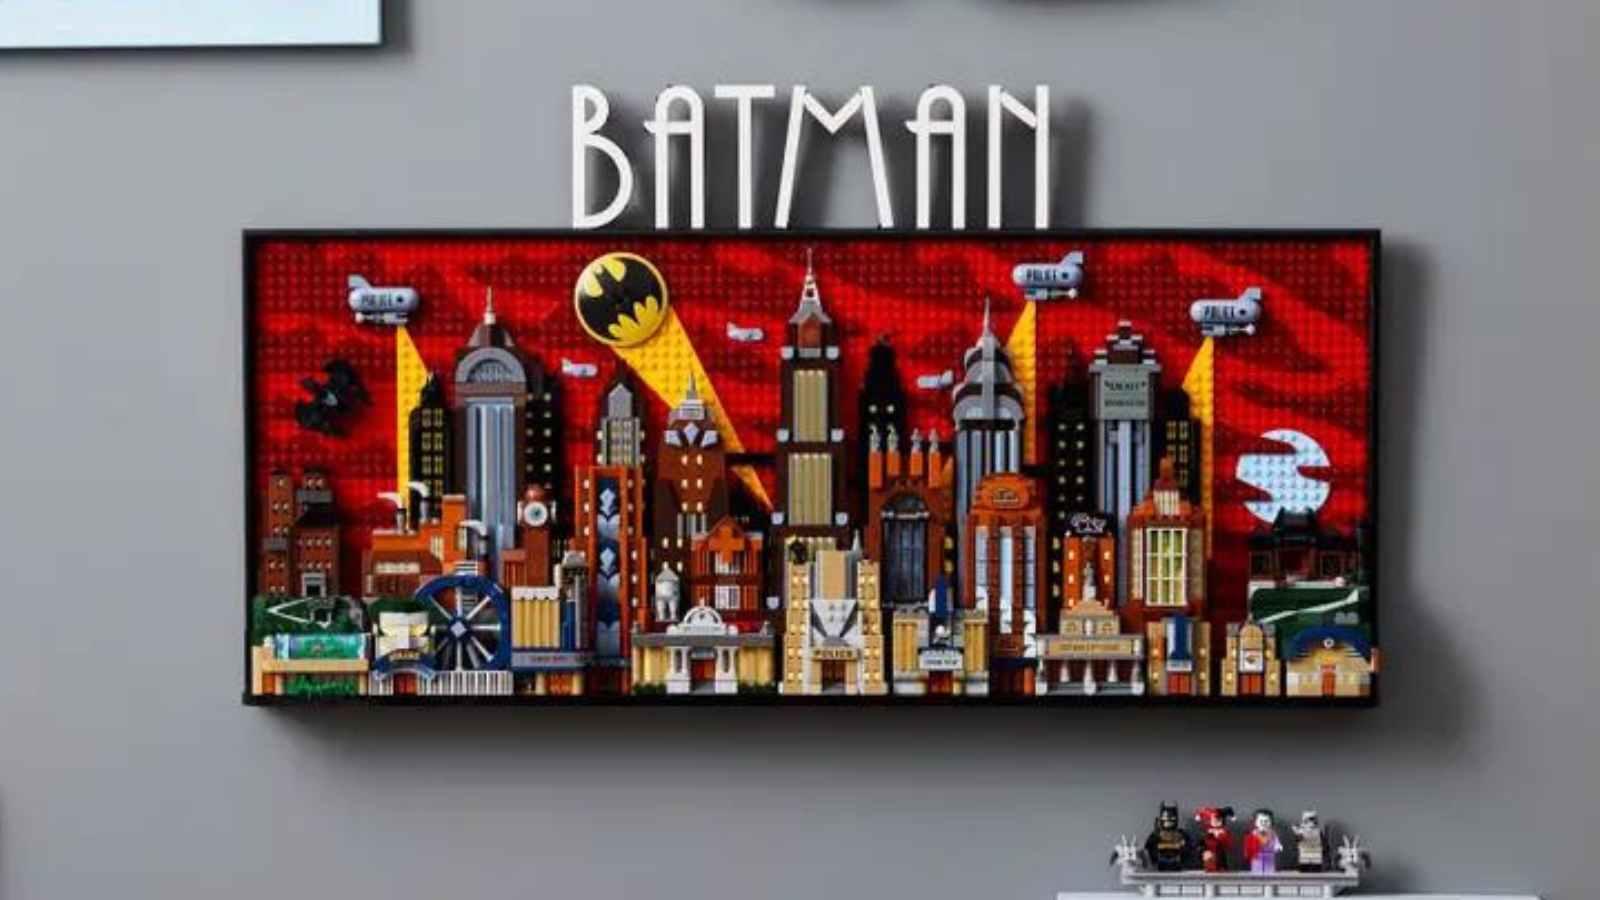 The LEGO DC Batman Gotham City on display